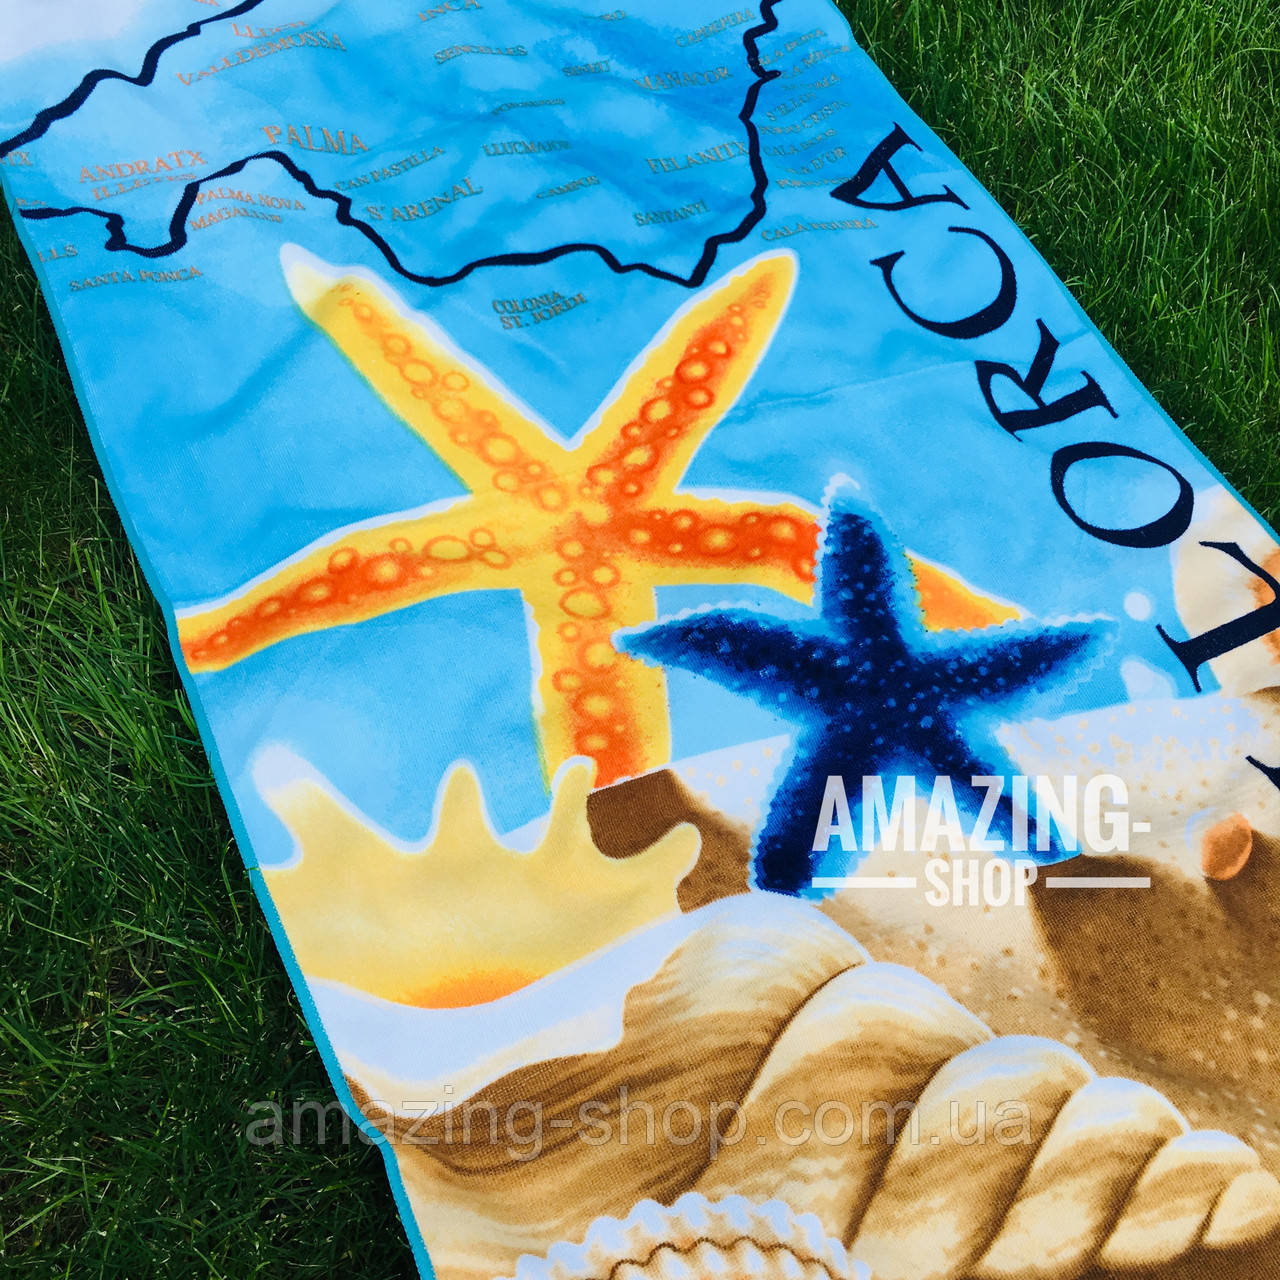 Пляжний рушник  ⁇  Пляжний плед  ⁇  Пляжний килимок  ⁇  Розмір 146*72 см.